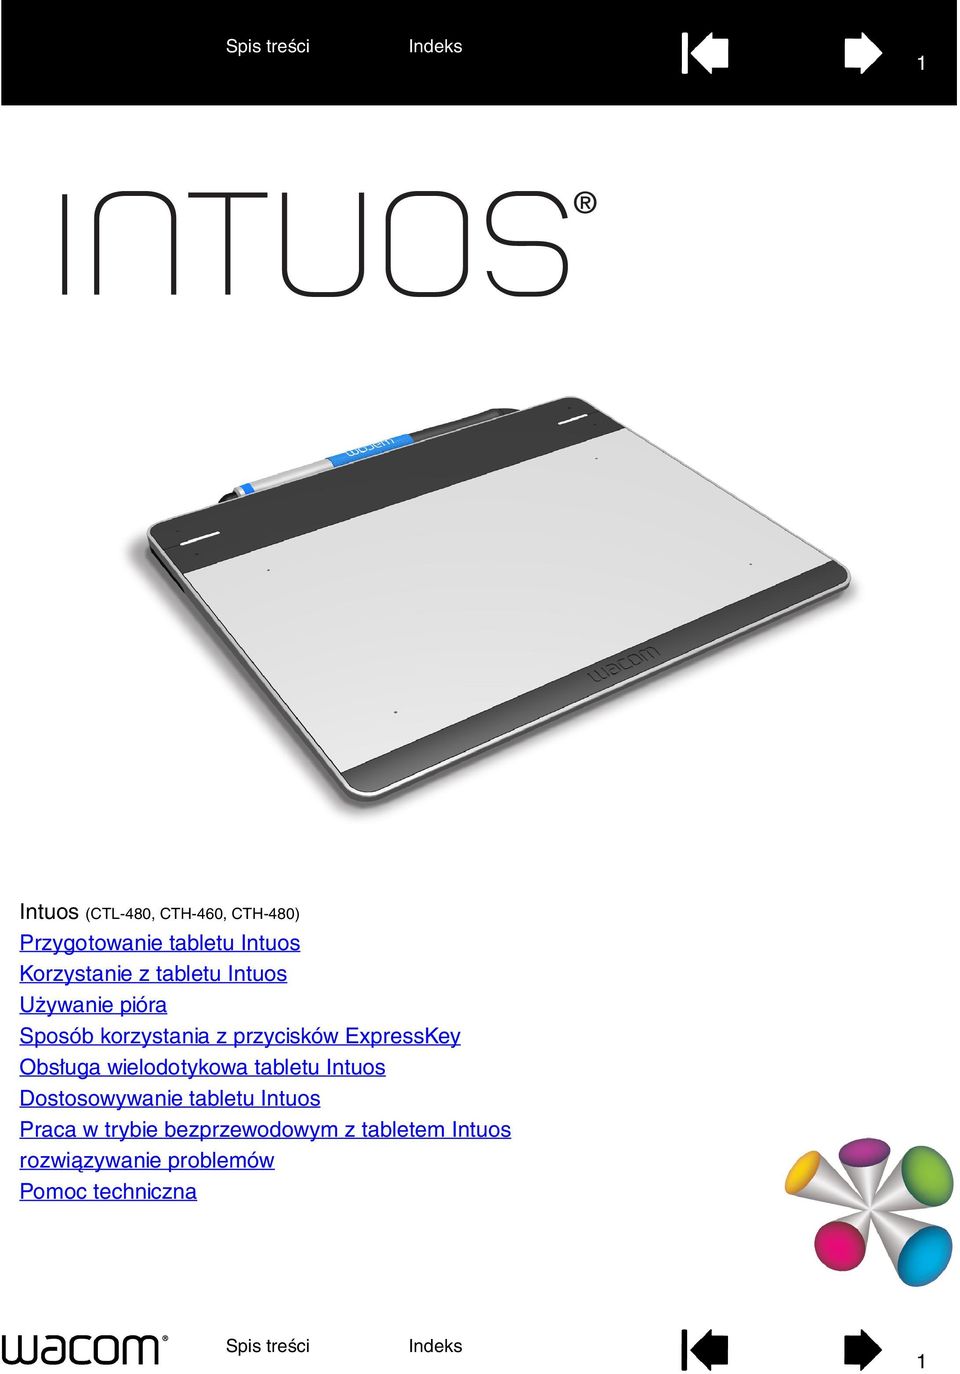 Obsługa wielodotykowa tabletu Intuos Dostosowywanie tabletu Intuos Praca w